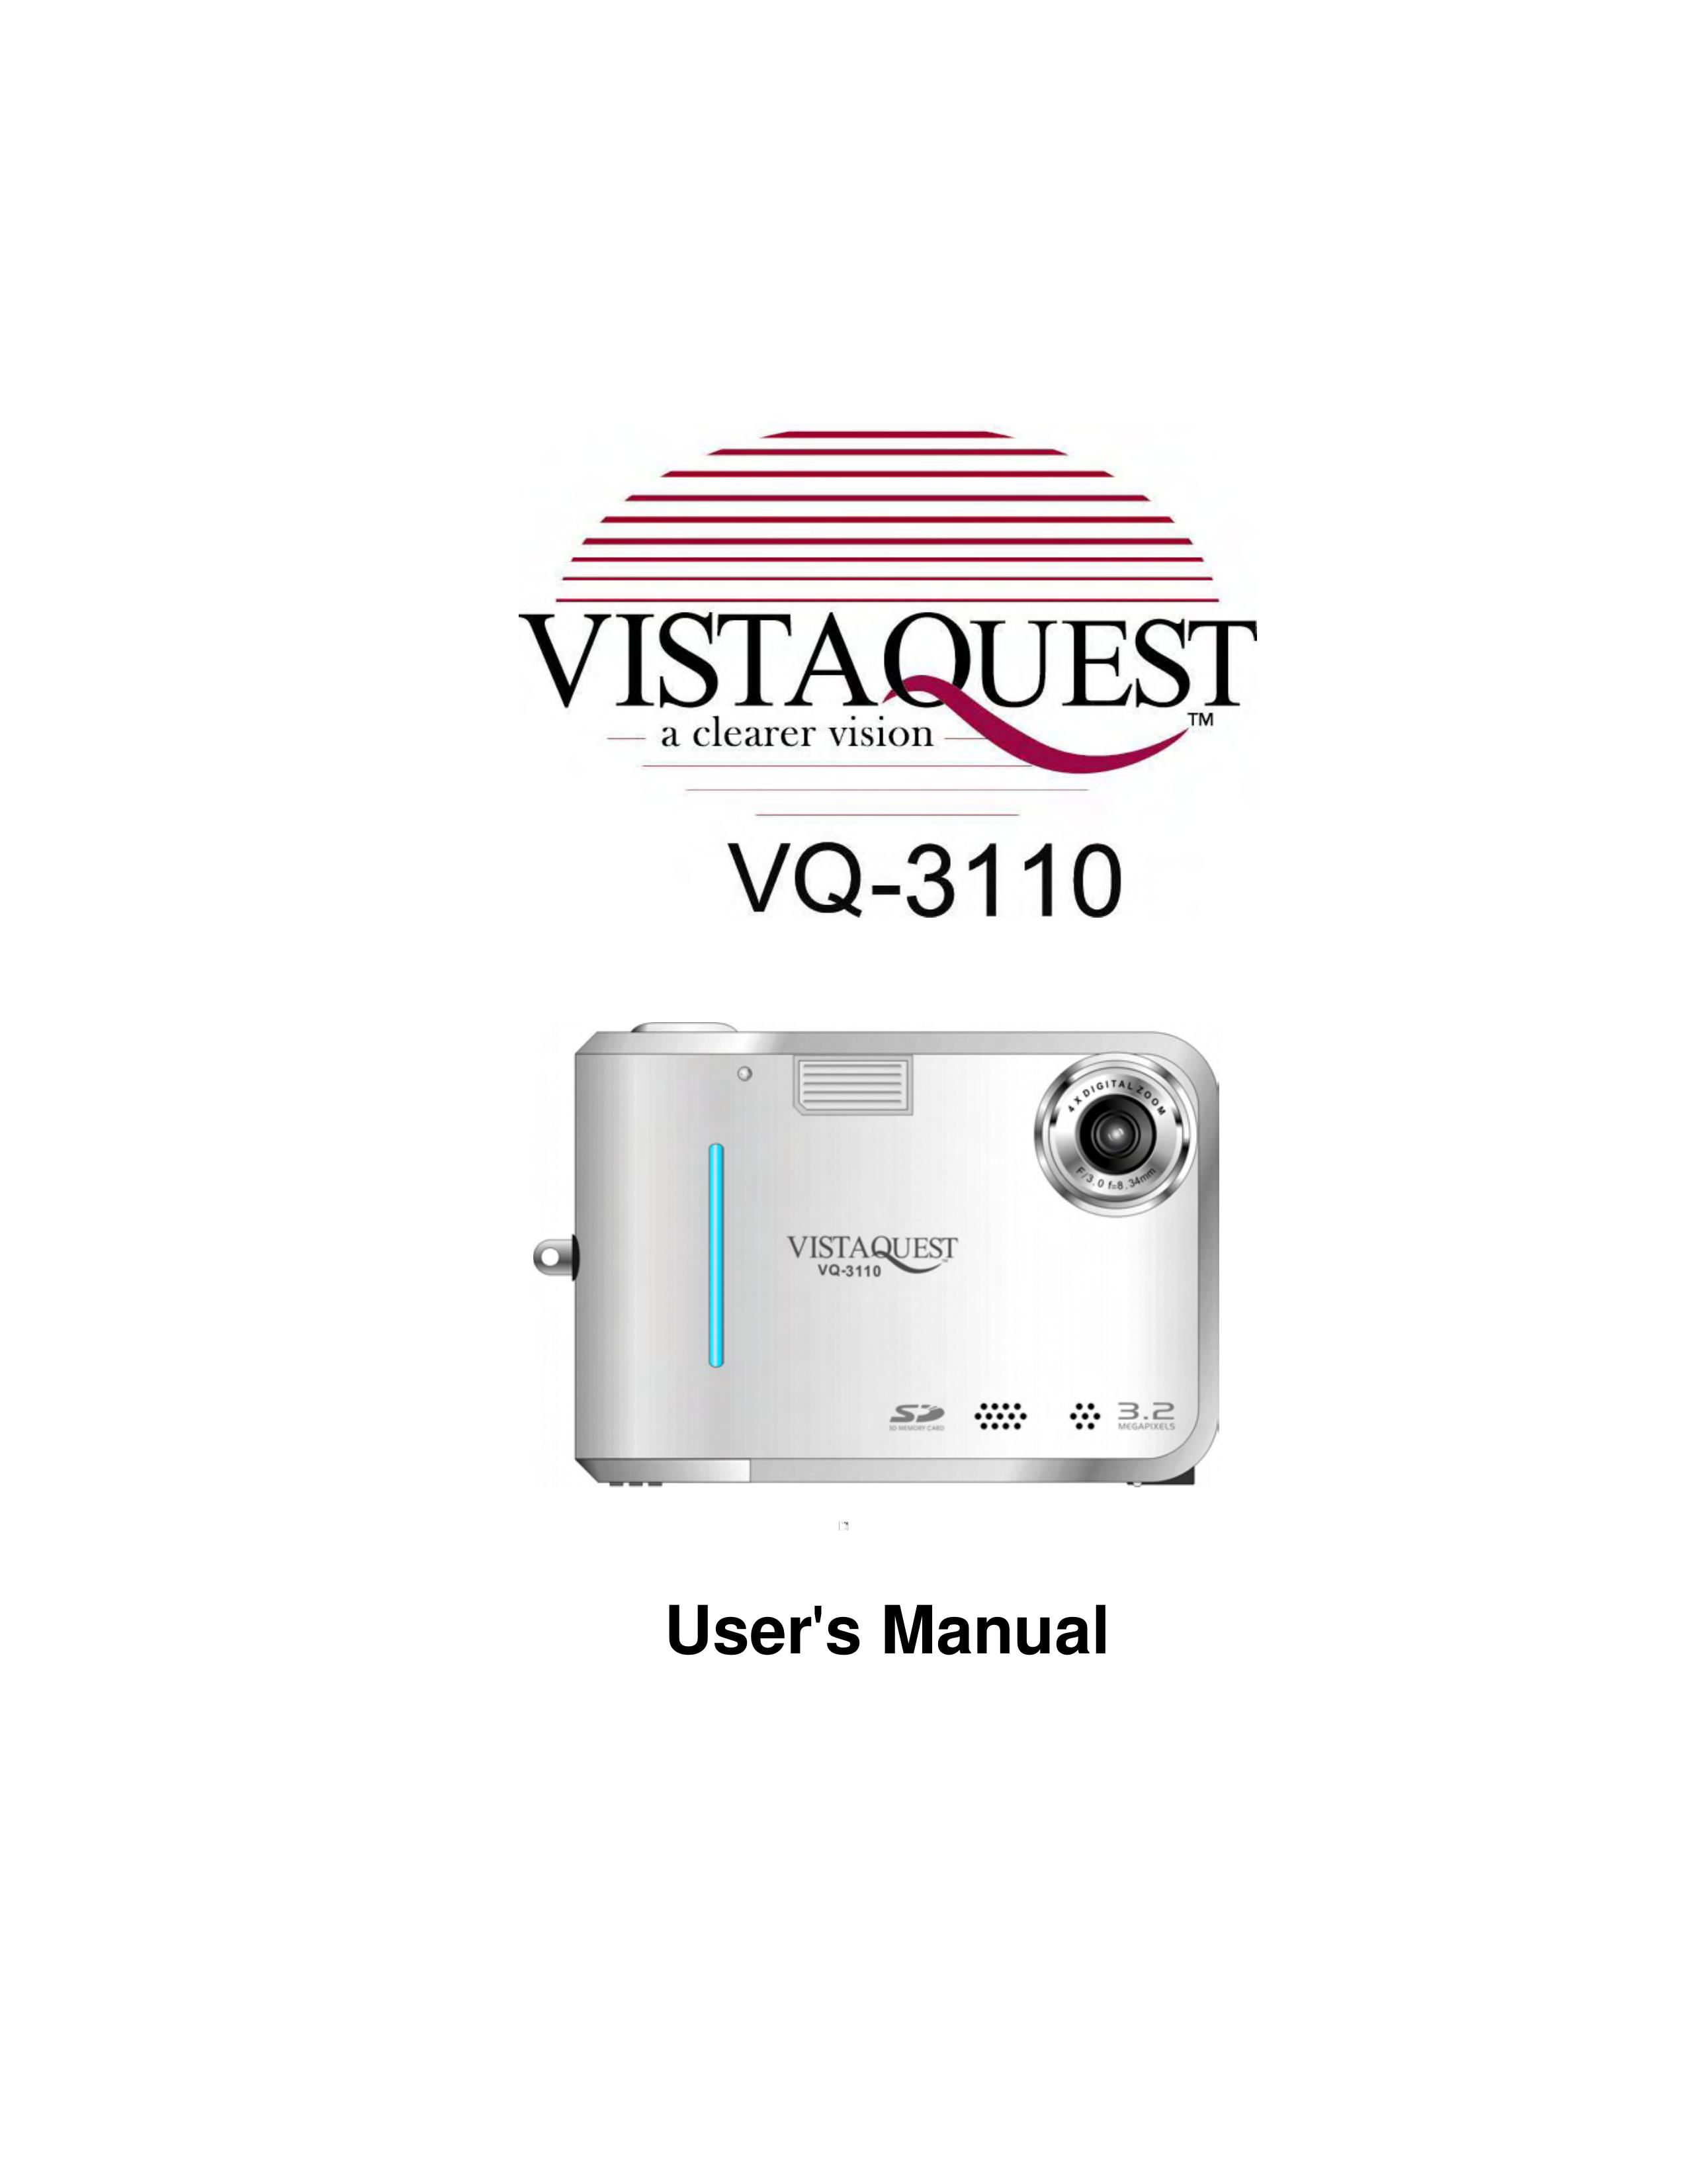 VistaQuest VQ-3110 Digital Camera User Manual